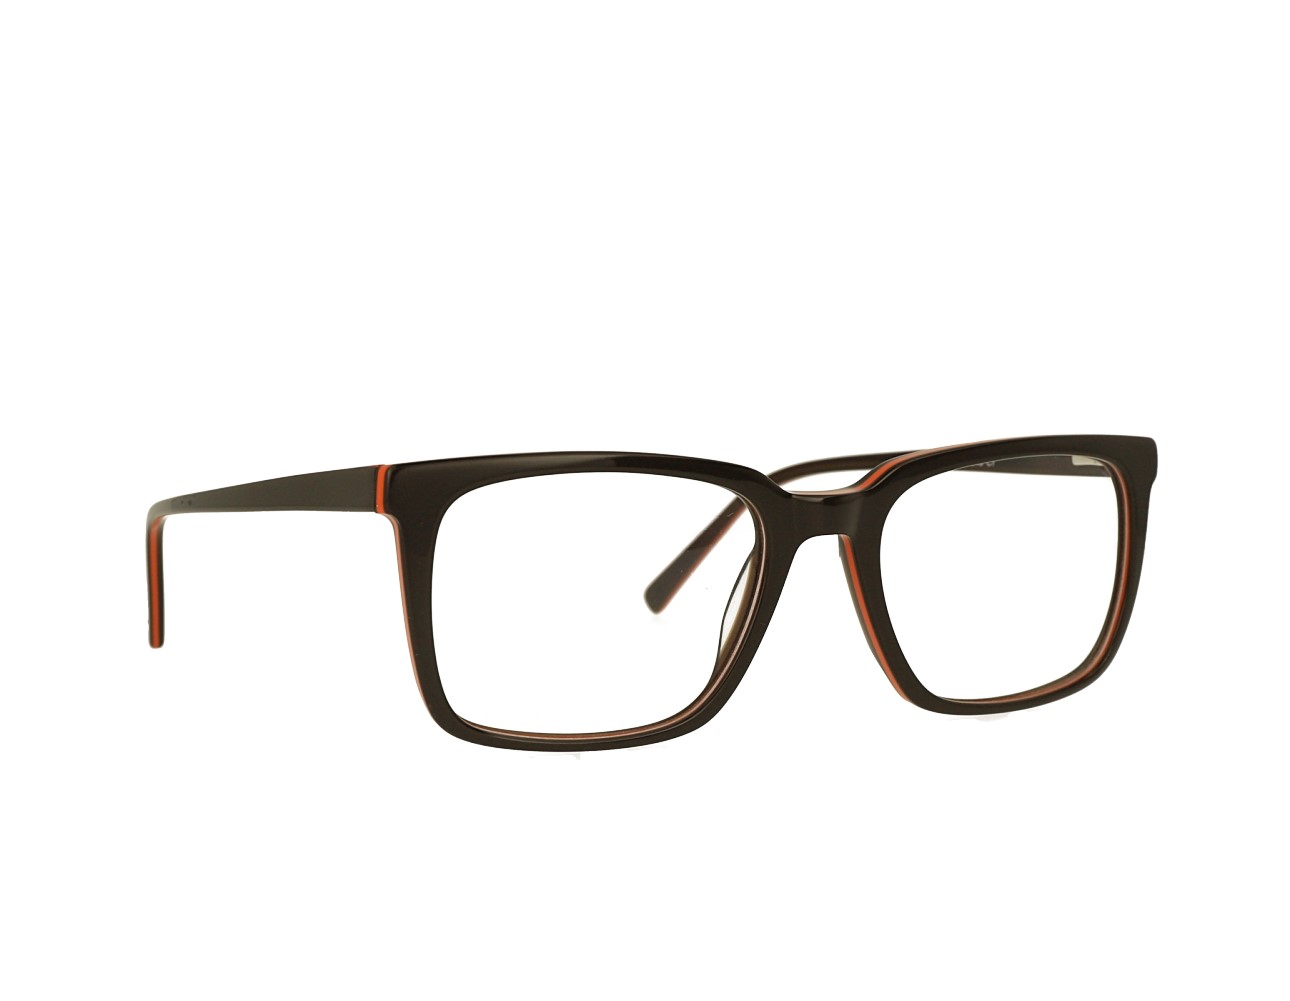 57 Mans Square Optical frame Acetate Eyeglasses Spring Hinge Eyewear